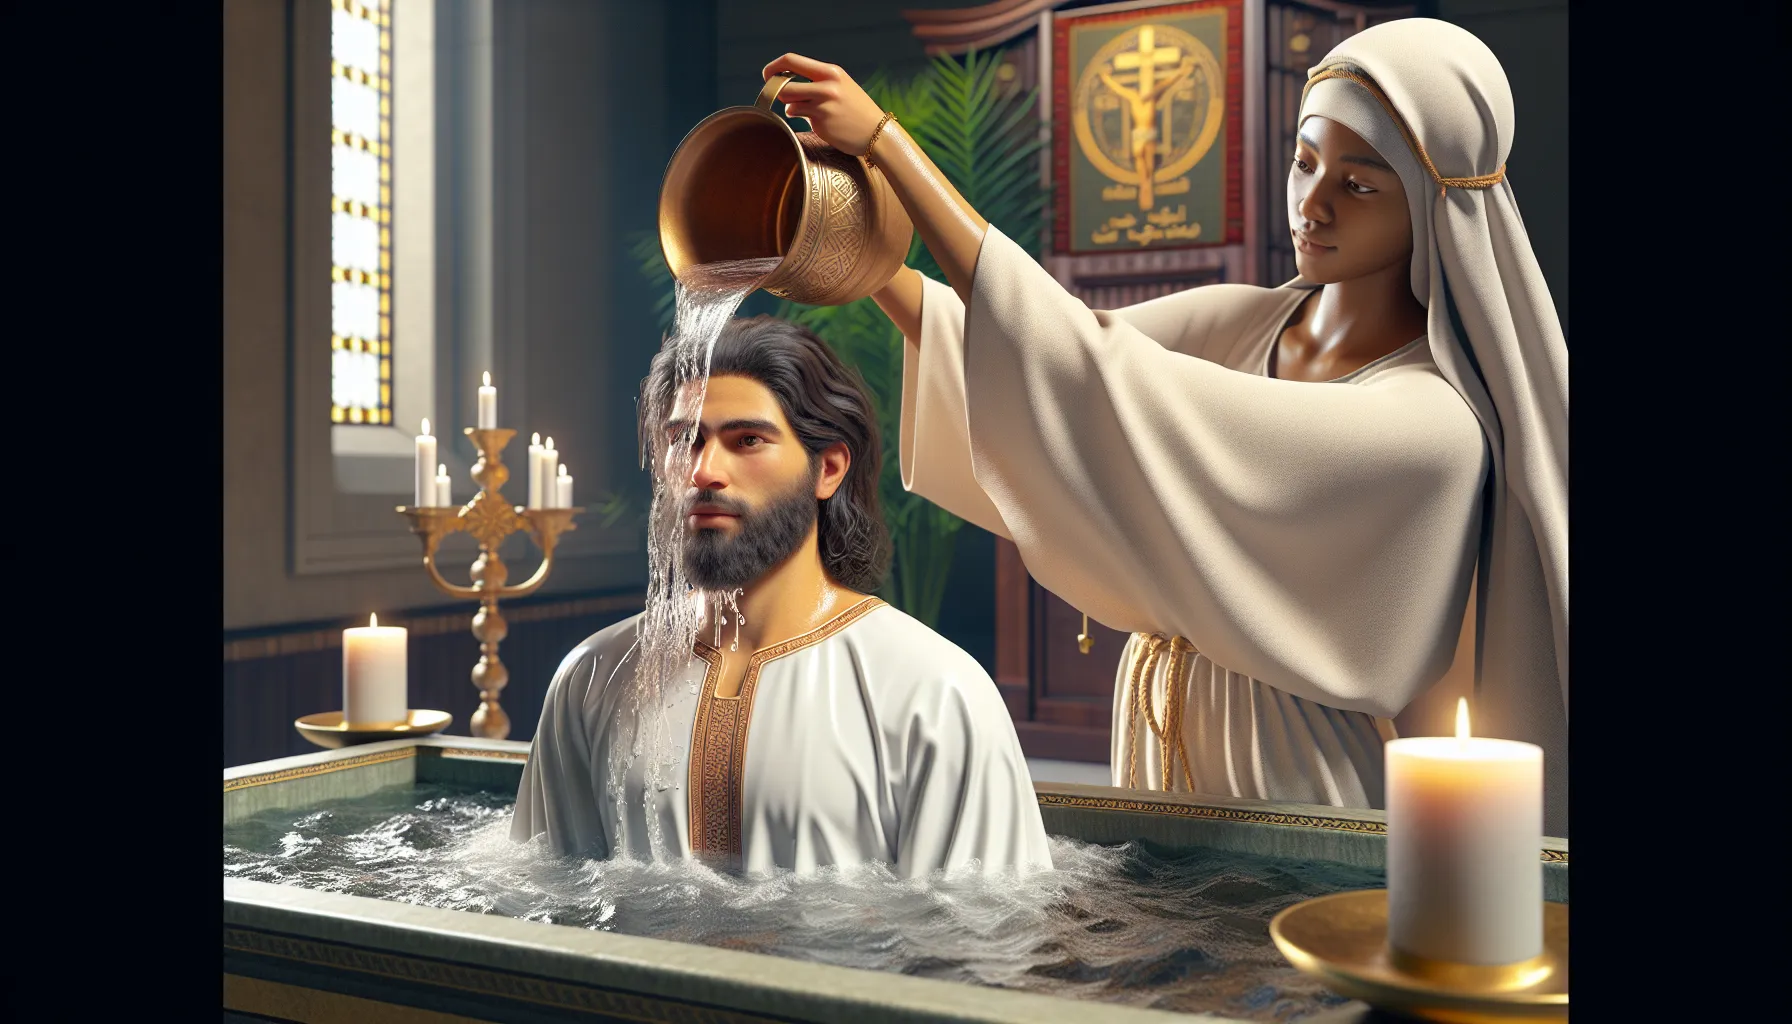 Aguas bautismales siendo derramadas sobre una persona durante el rito religioso